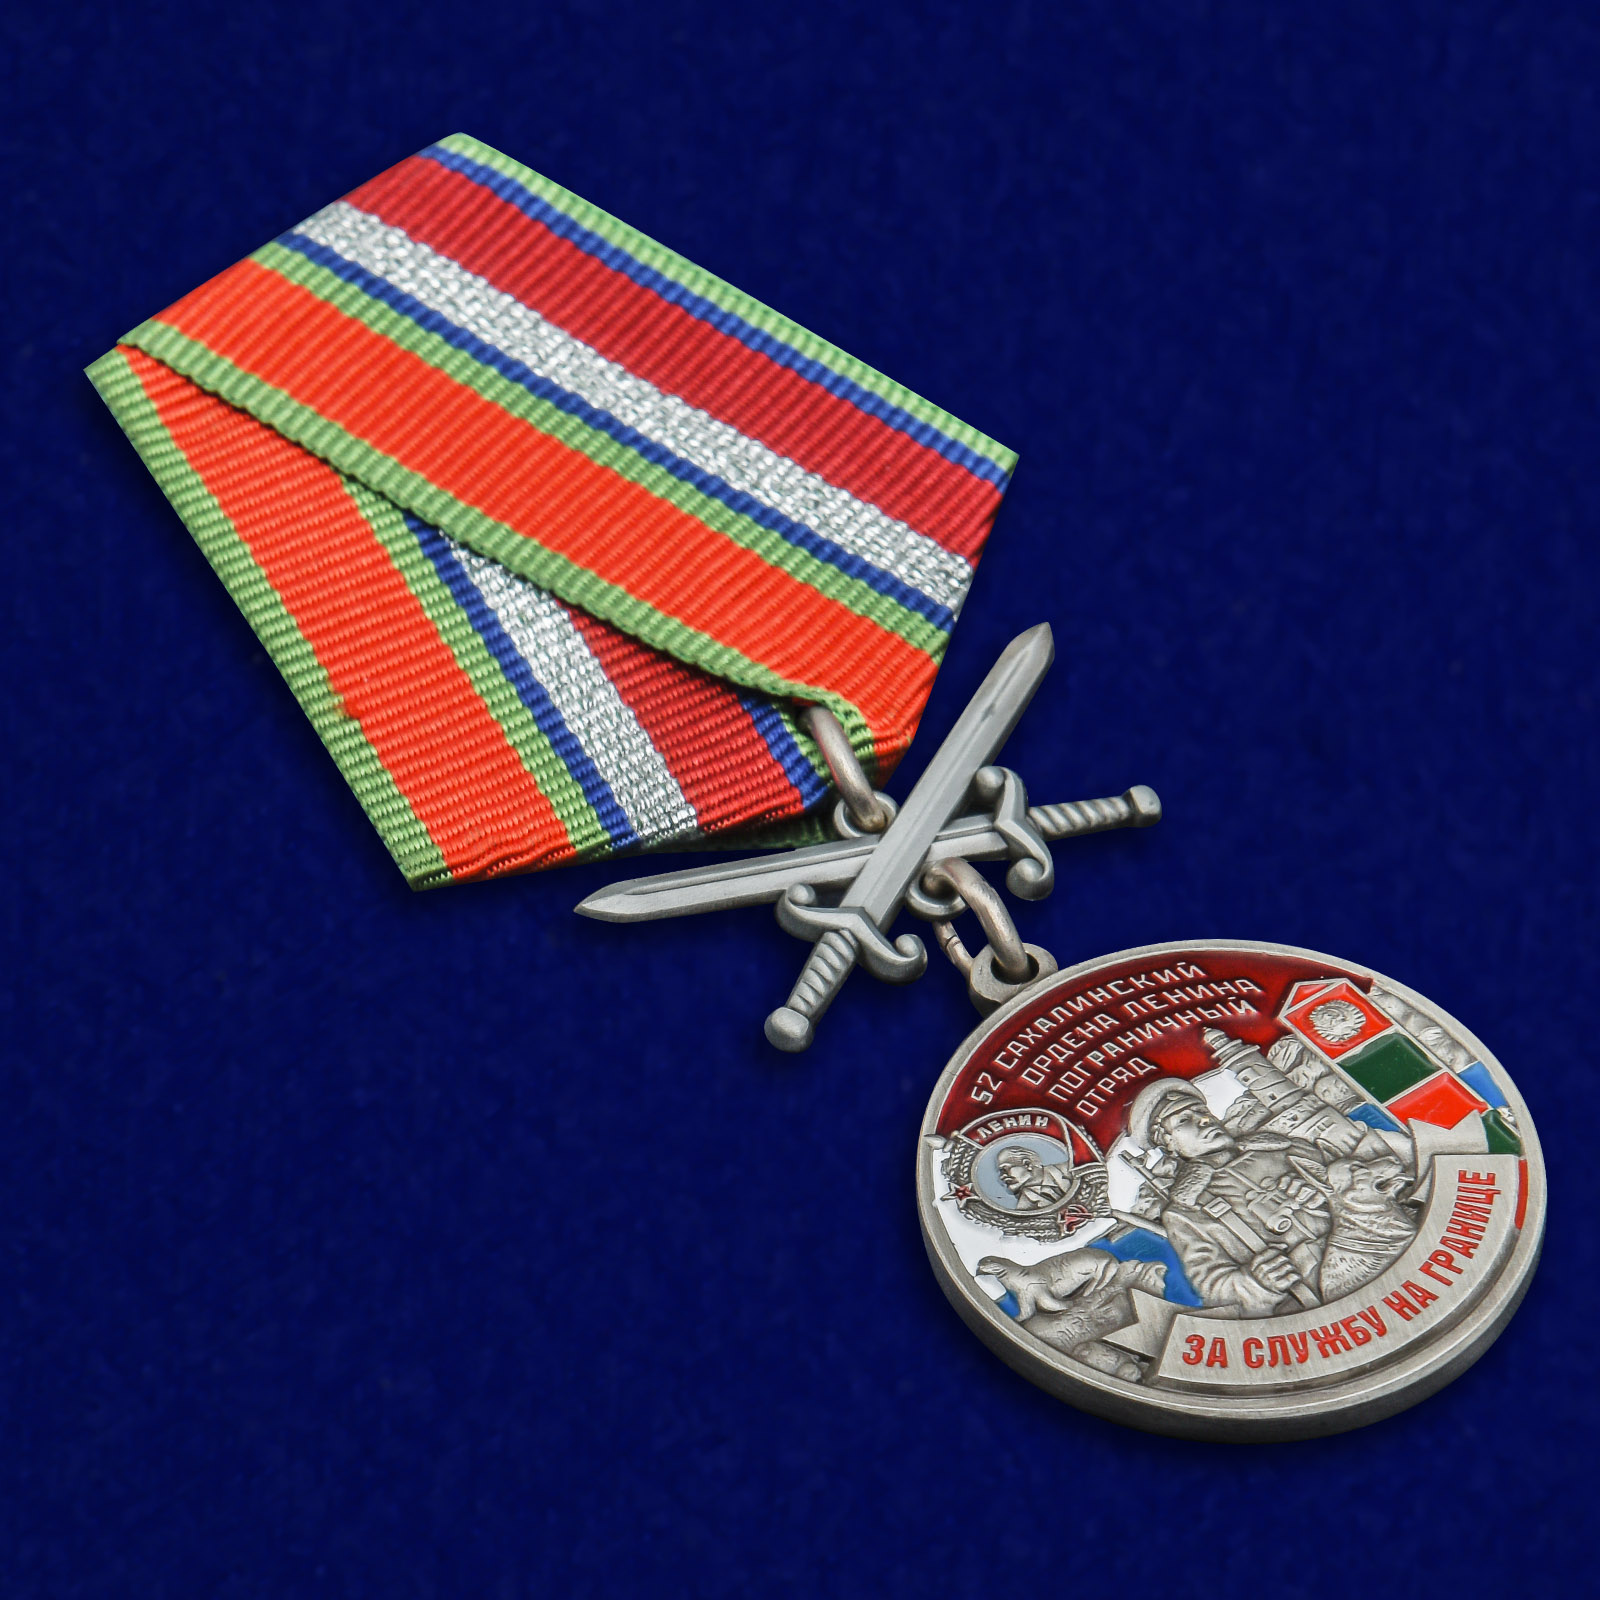 Купить медаль "За службу в Сахалинском пограничном отряде"